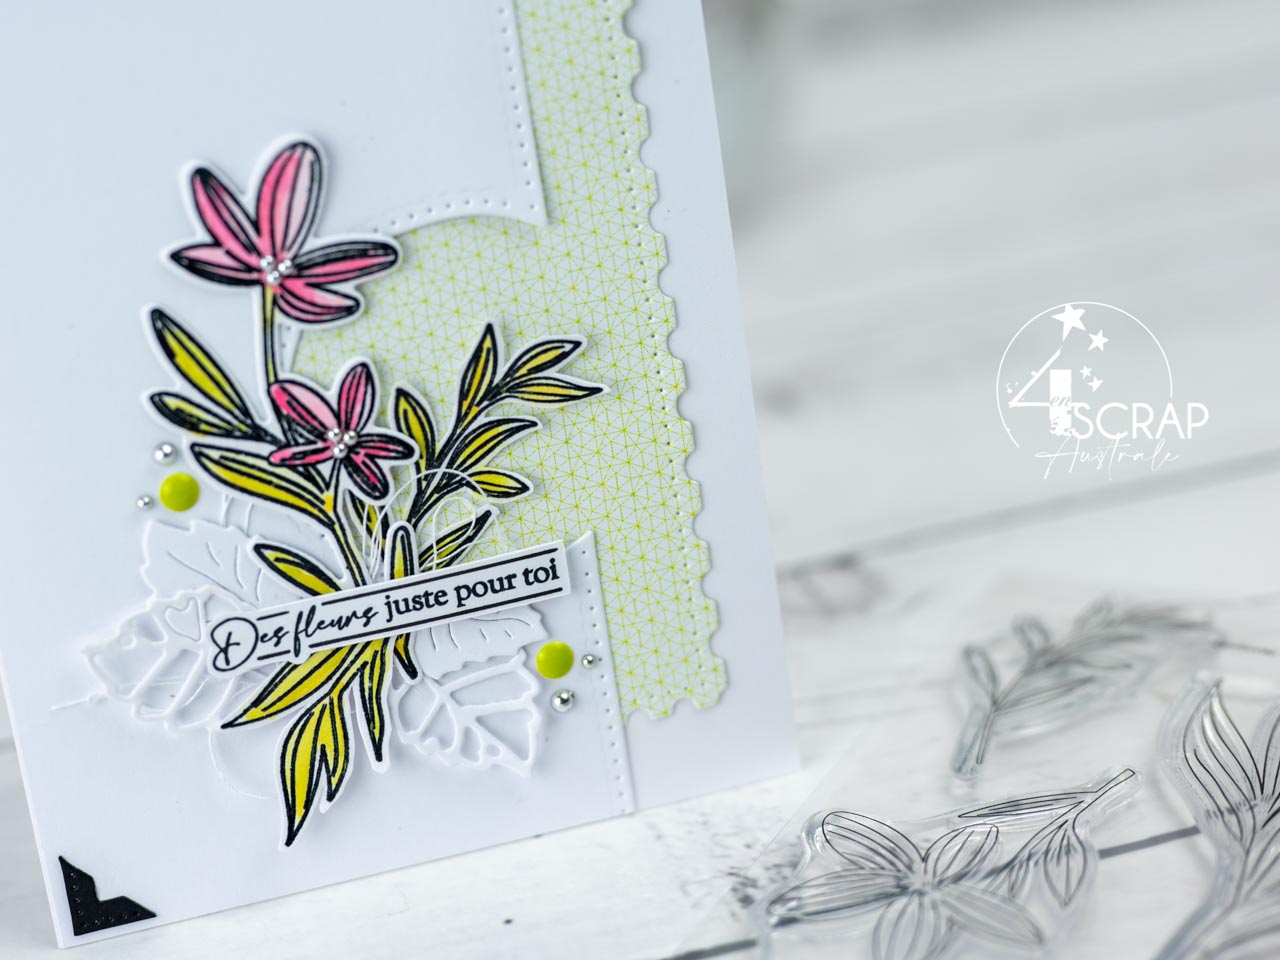 Création d'un ensemble composé d'une carte, d'une étiquette et d'une enveloppe coordonnée avec les jolies fleurs et feuillages de la collection printemps de 4enscrap.